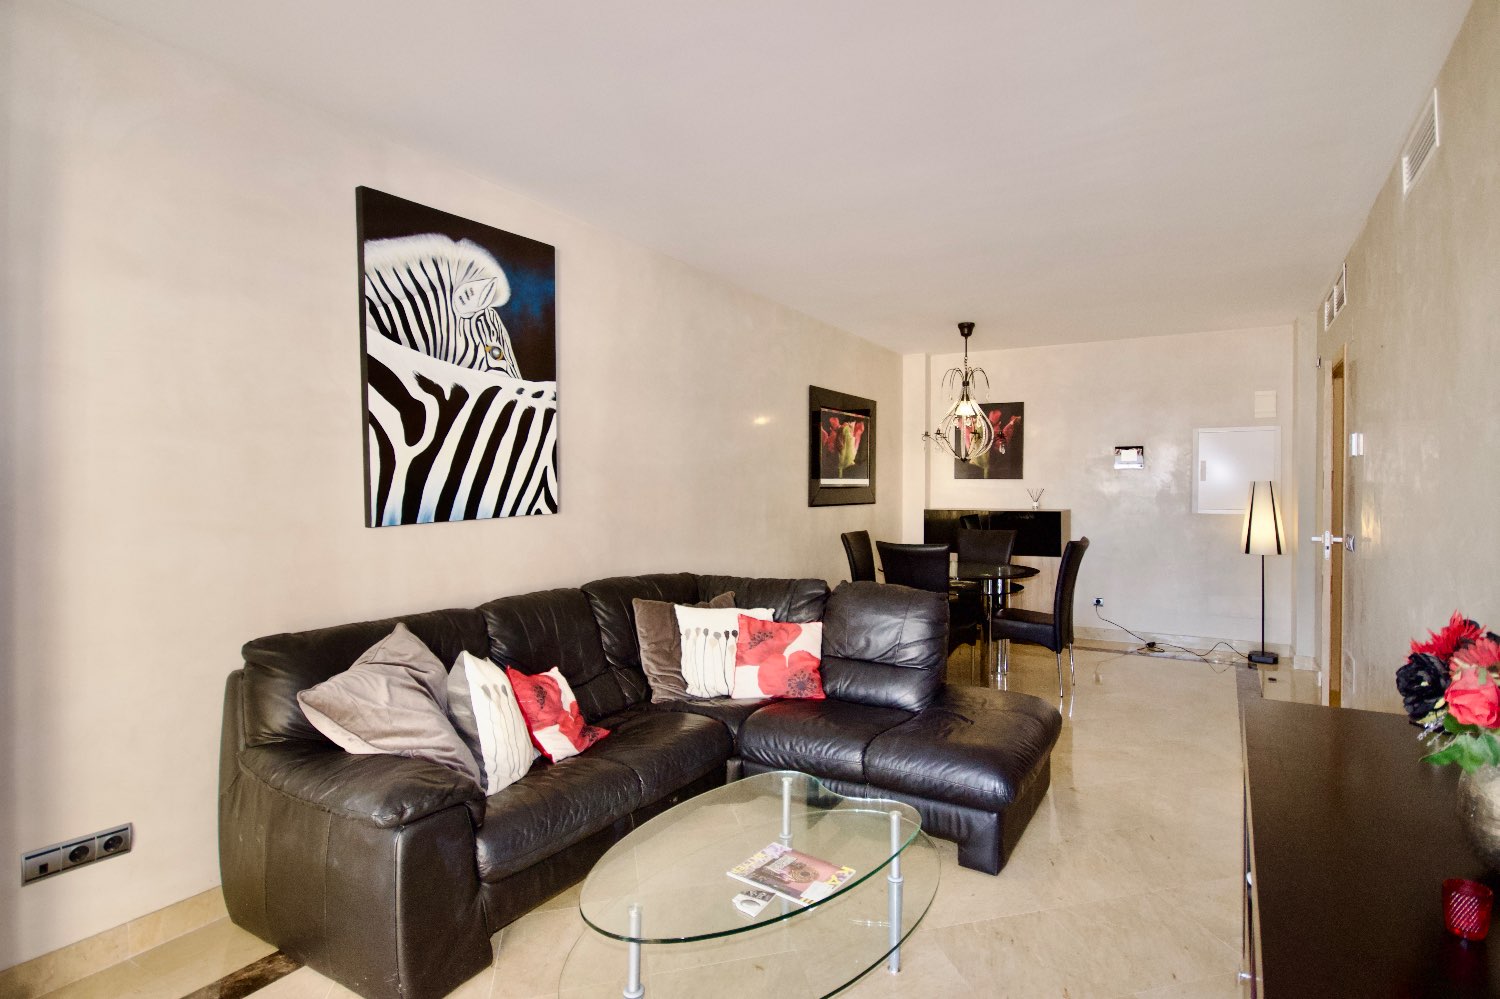 Excepcional apartamento en Marina del Castillo - Puerto de La Duquesa - Manilva - Málaga